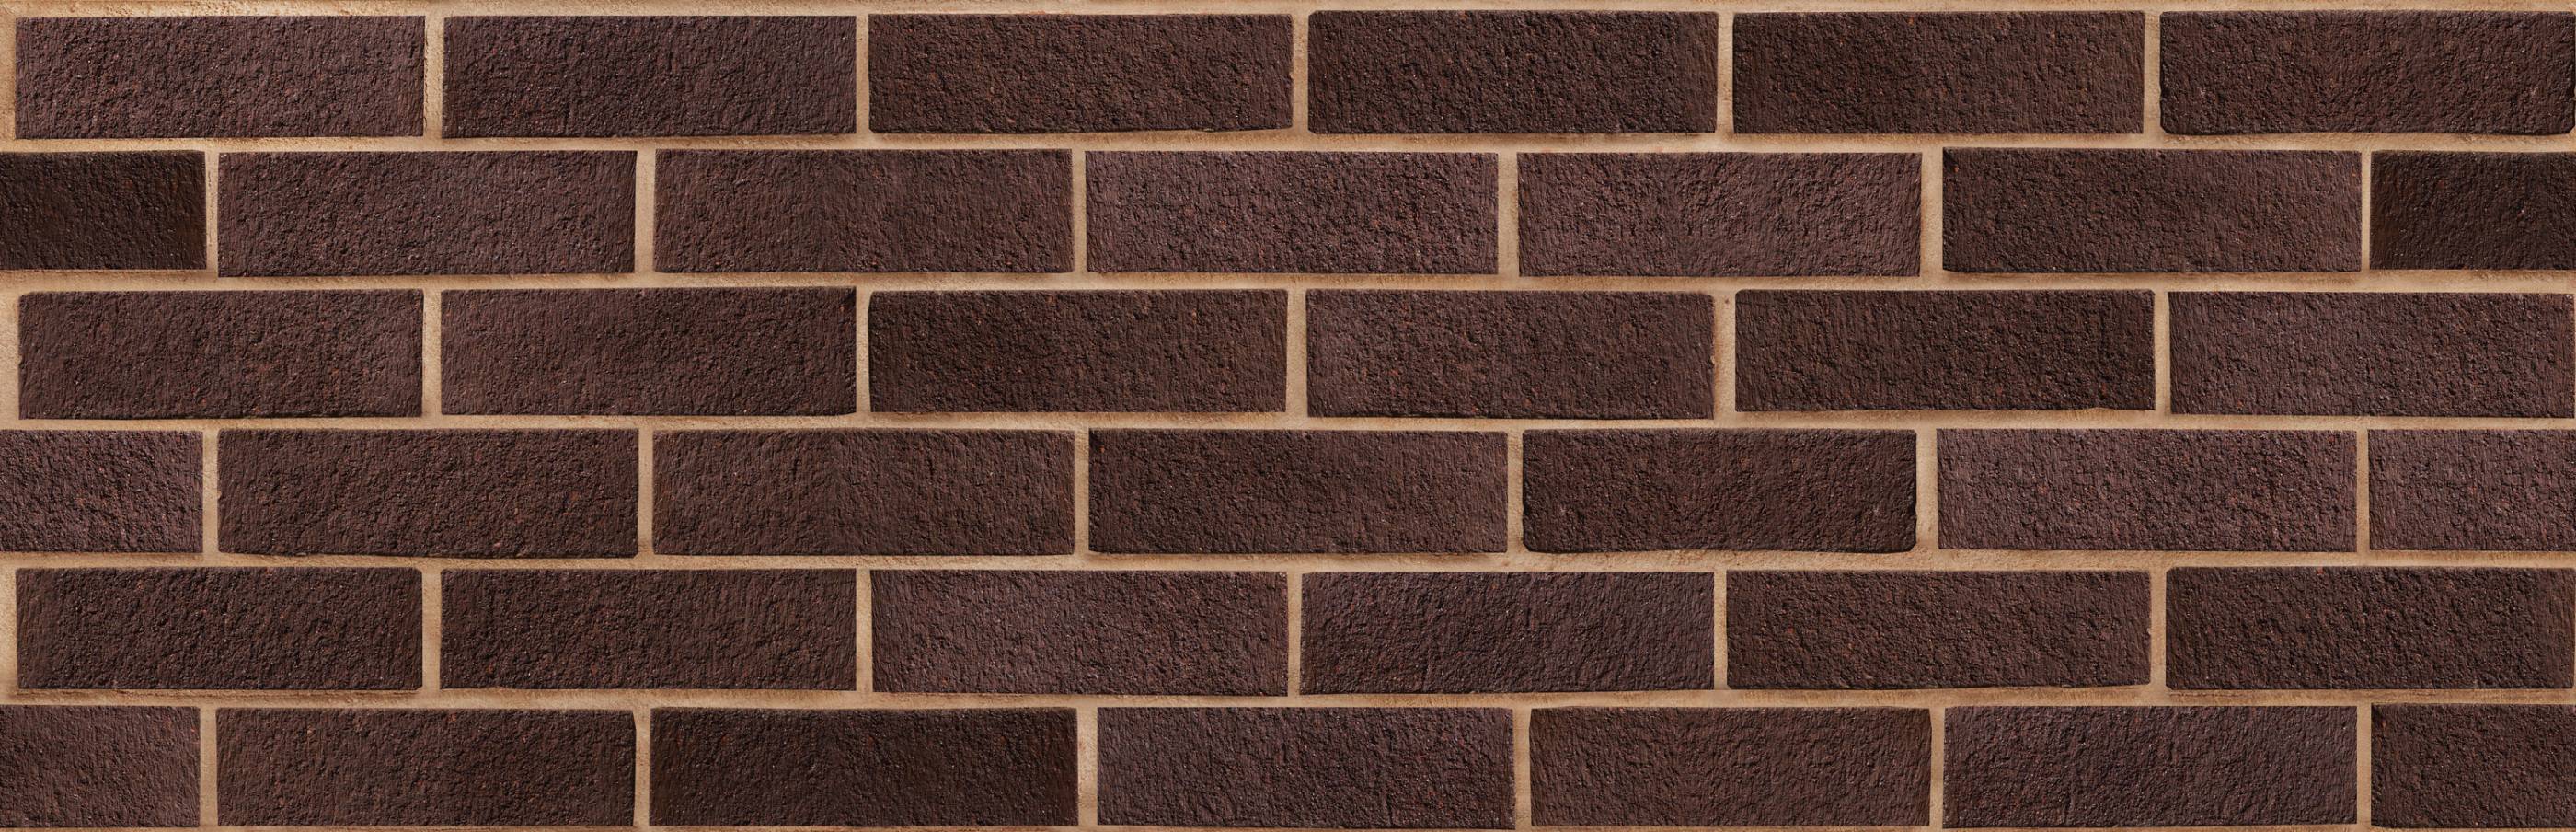 Carlton Brown Sandfaced Clay Brick